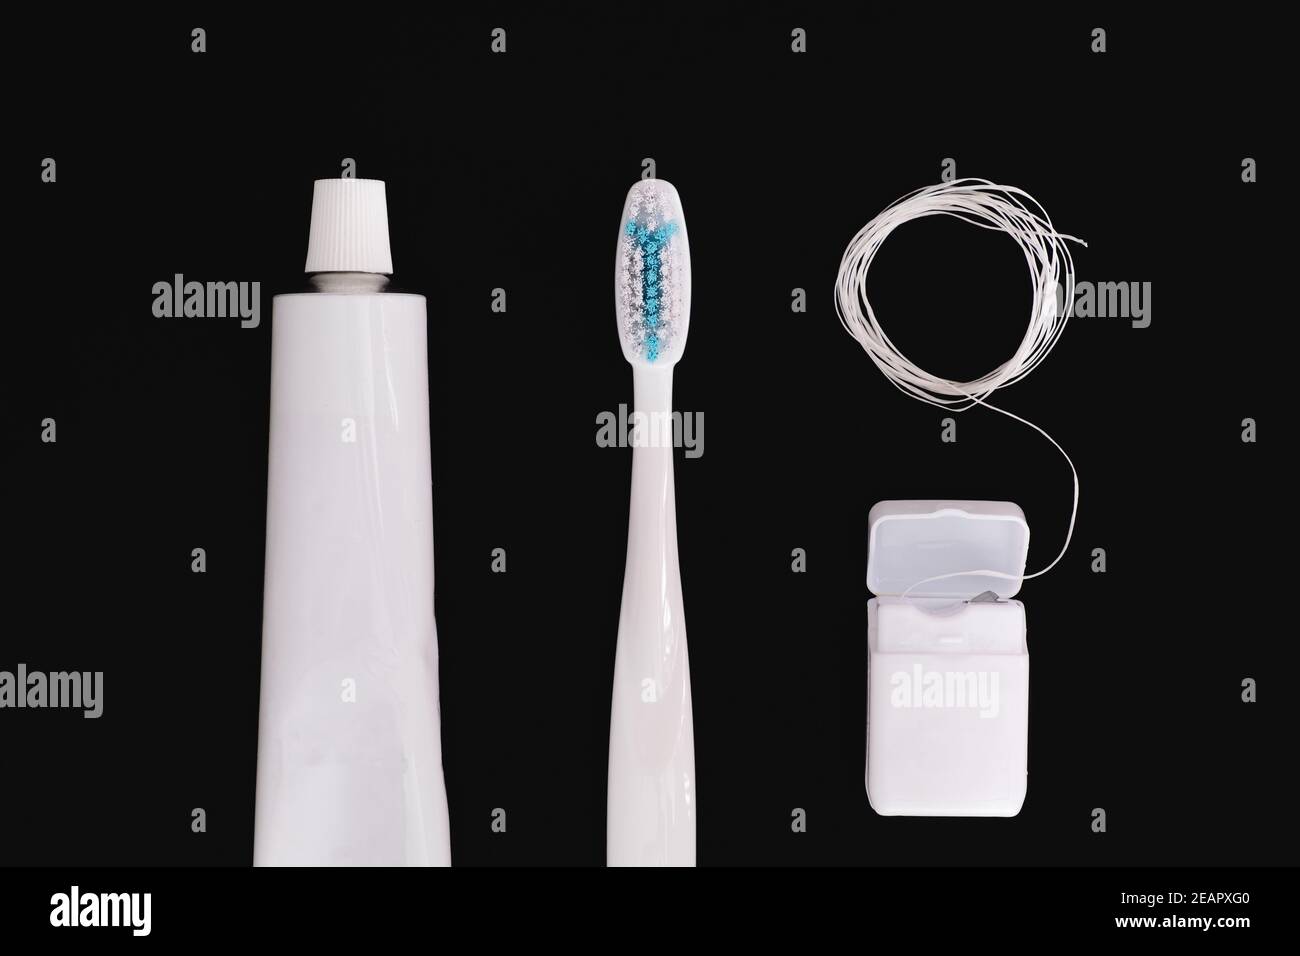 Objets d'hygiène dentaire : brosse à dents, dentifrice et soie dentaire. Accessoires génériques blancs pour garder les dents en santé sur fond noir Banque D'Images